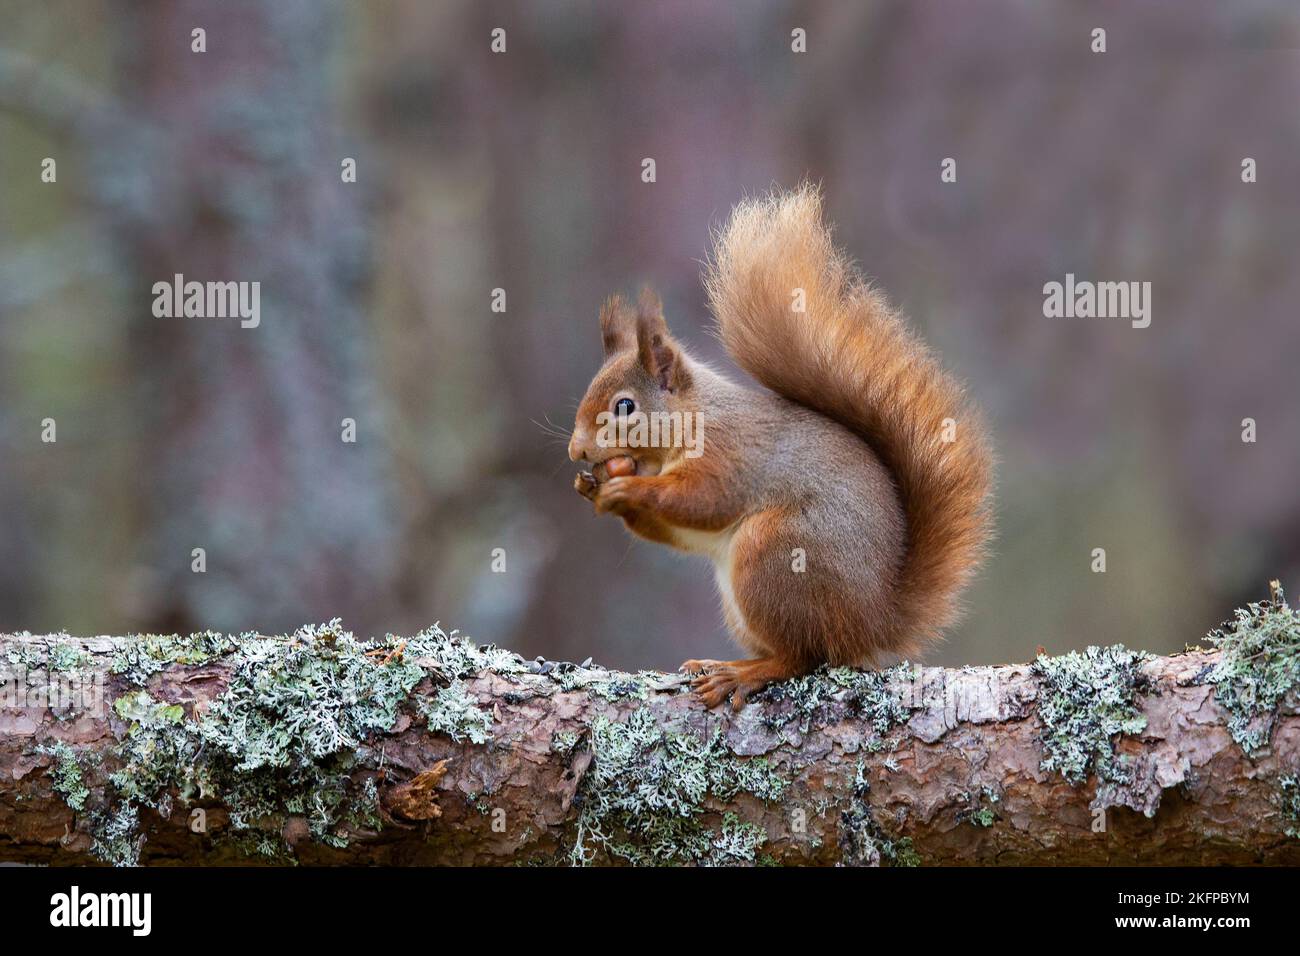 Un écureuil rouge eurasien Sciurus vulgaris avec une queue d'hiver bushy mangeant un noisette sur une branche d'arbre couverte de lichen en Écosse Banque D'Images